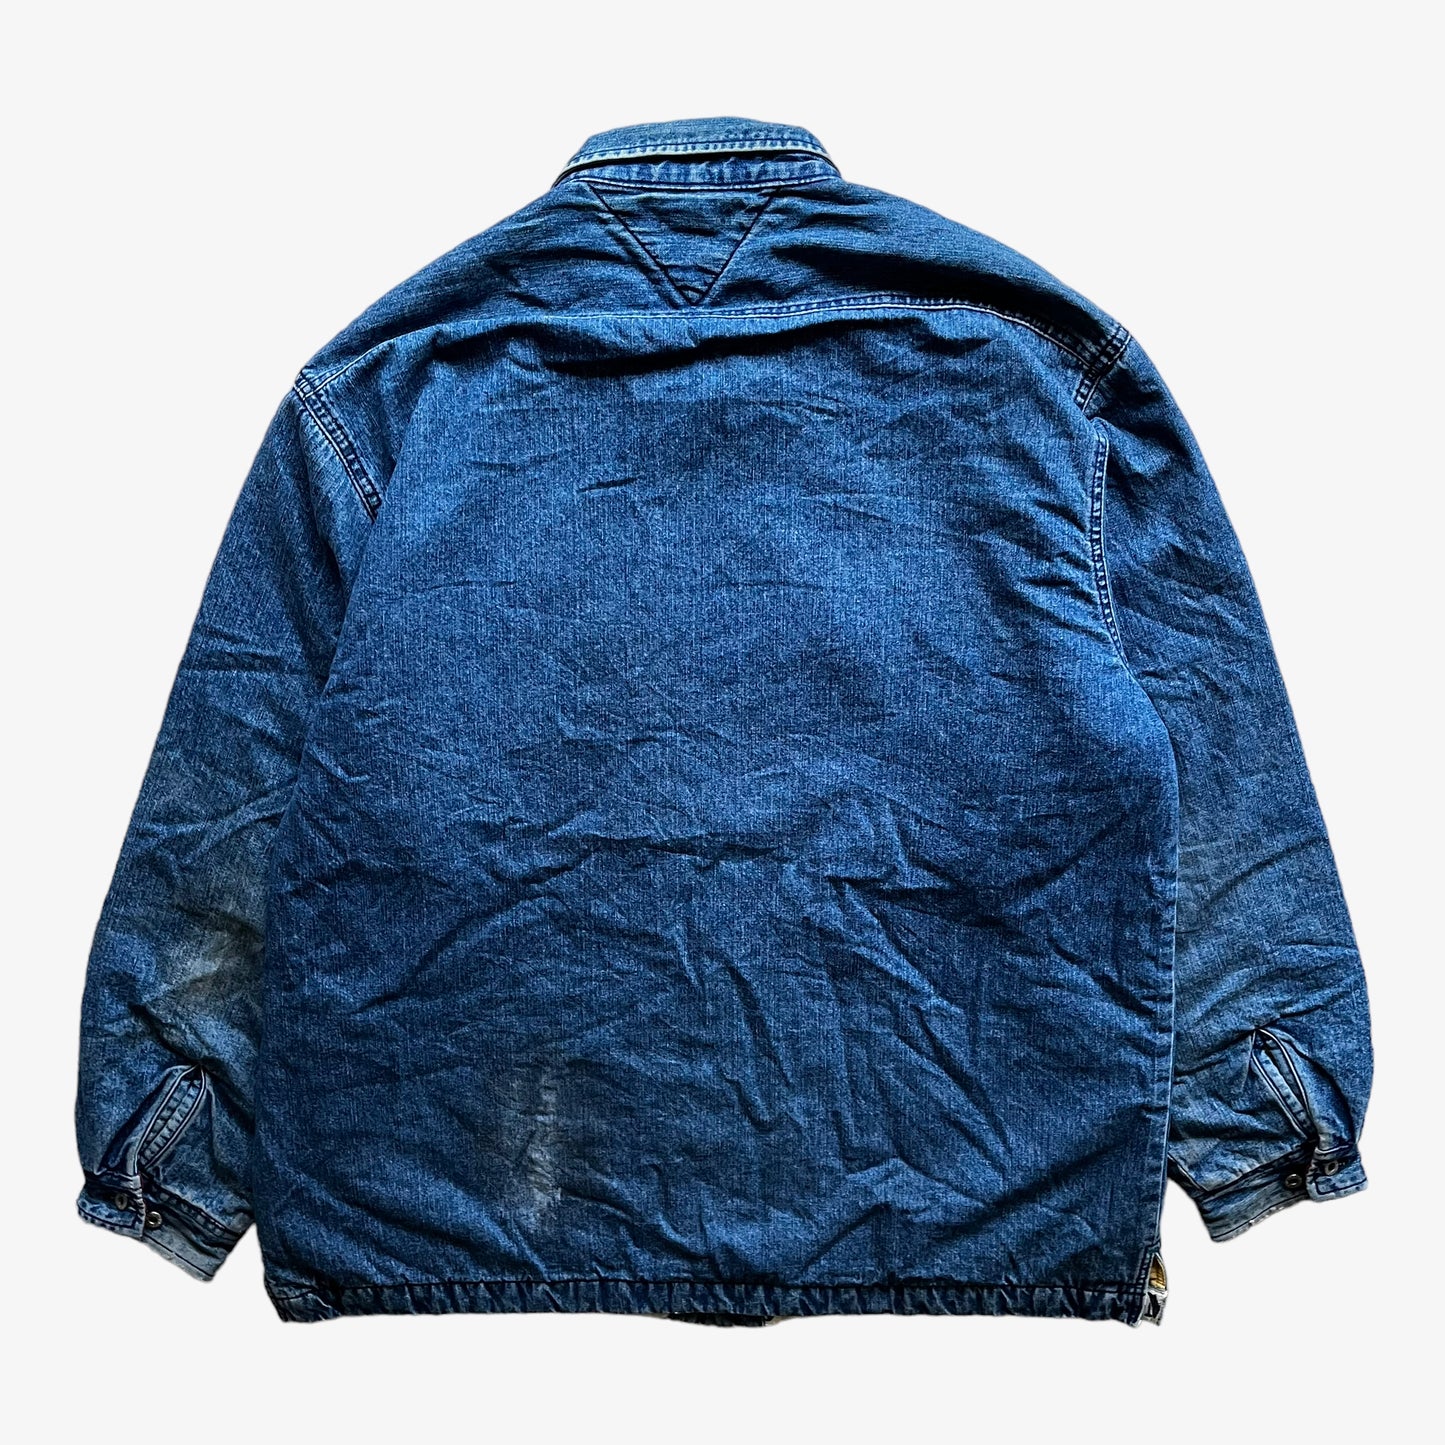 Vintage 90s Tommy Hilfiger Blue Denim Shacket Shirt Jacket Back - Casspios Dream